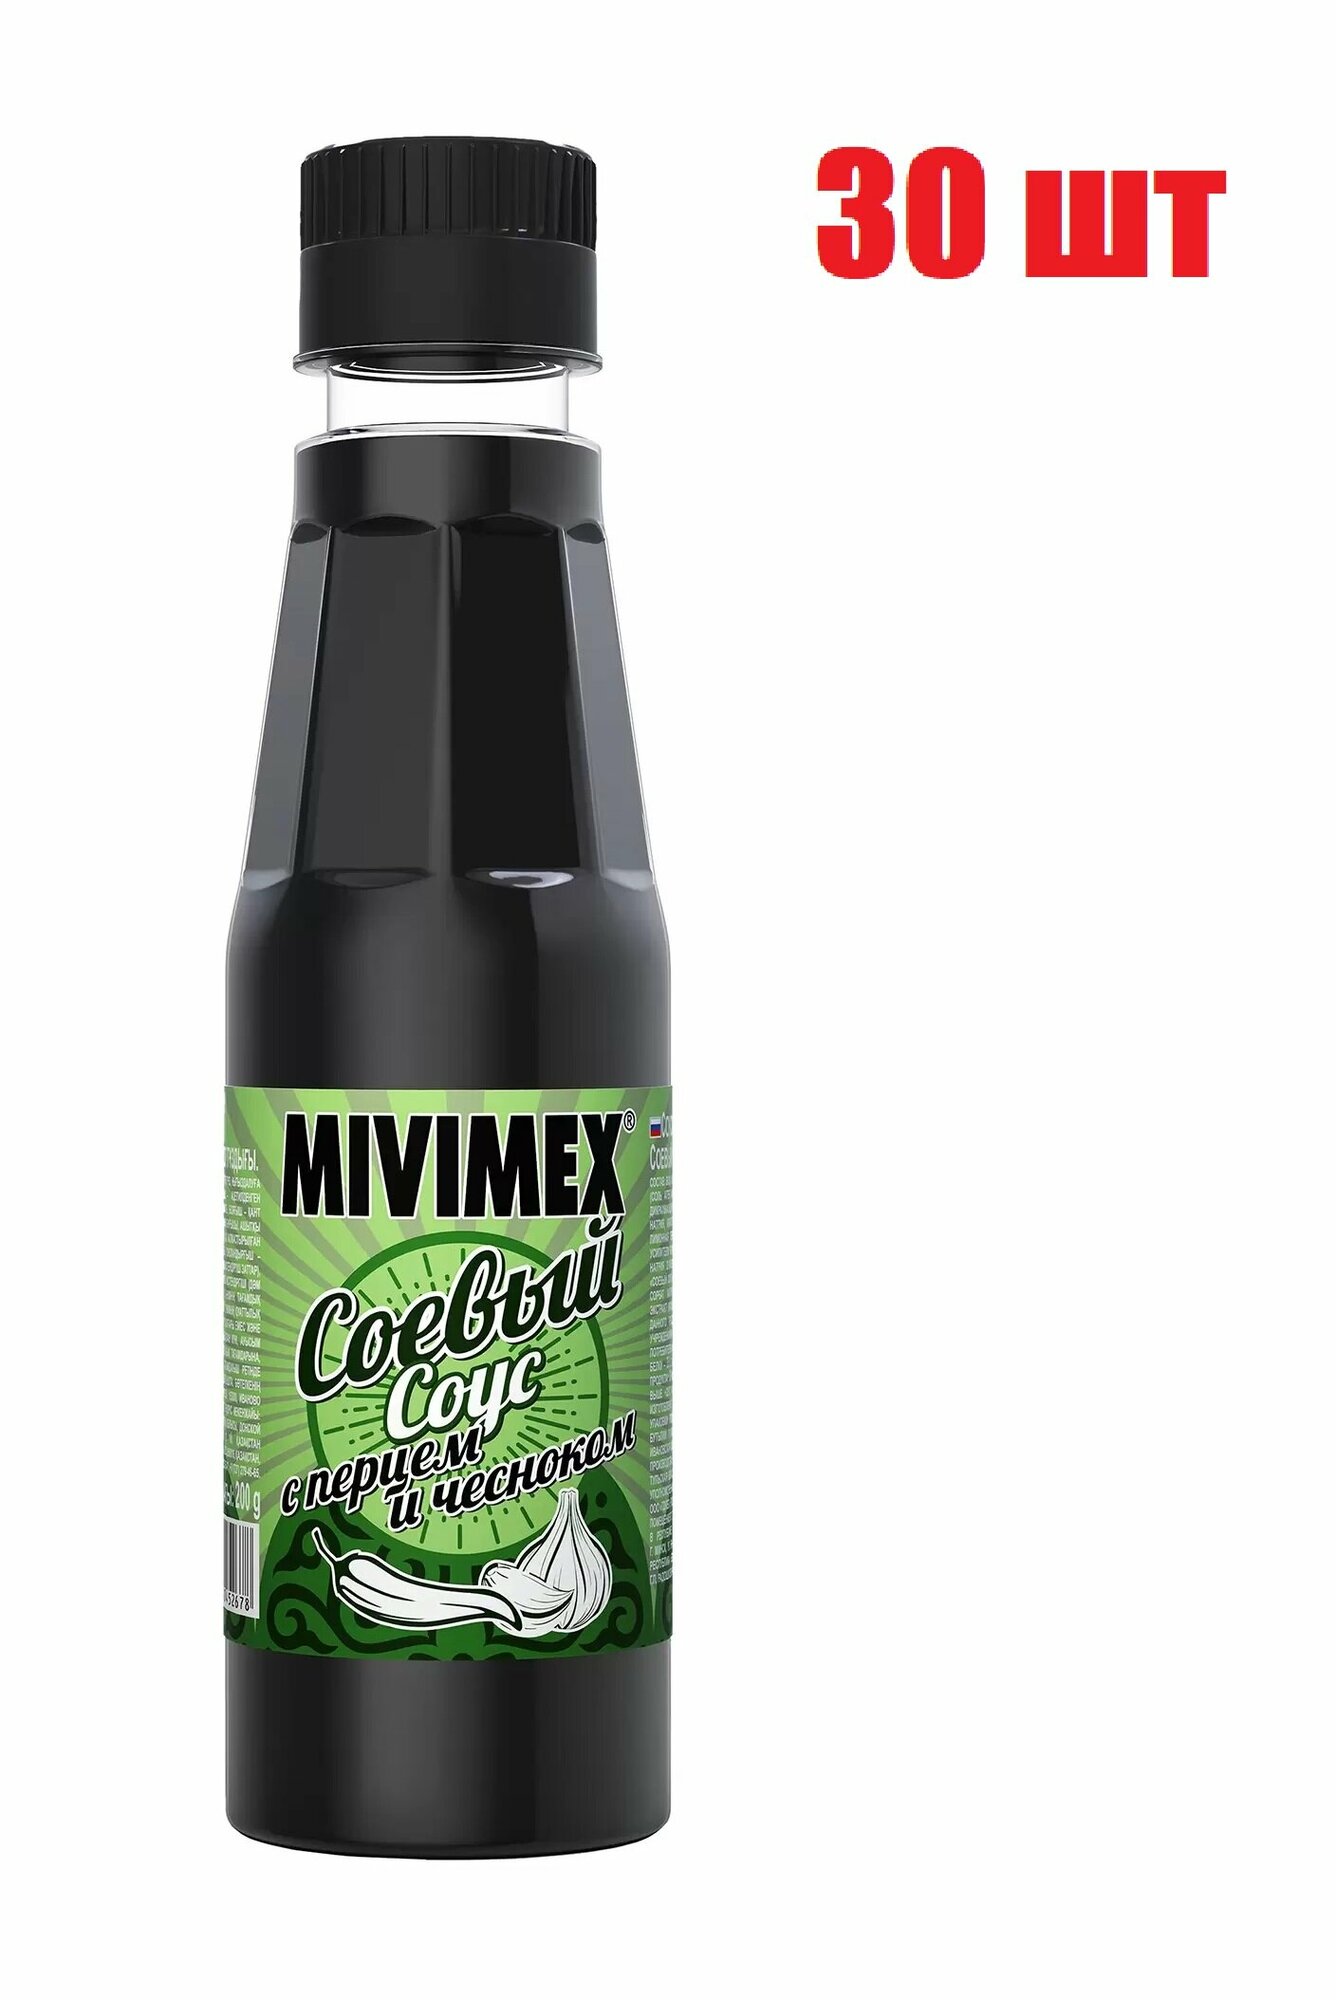 Соус соевый, "Mivimex", с перцем и чесноком, 200г 30 шт